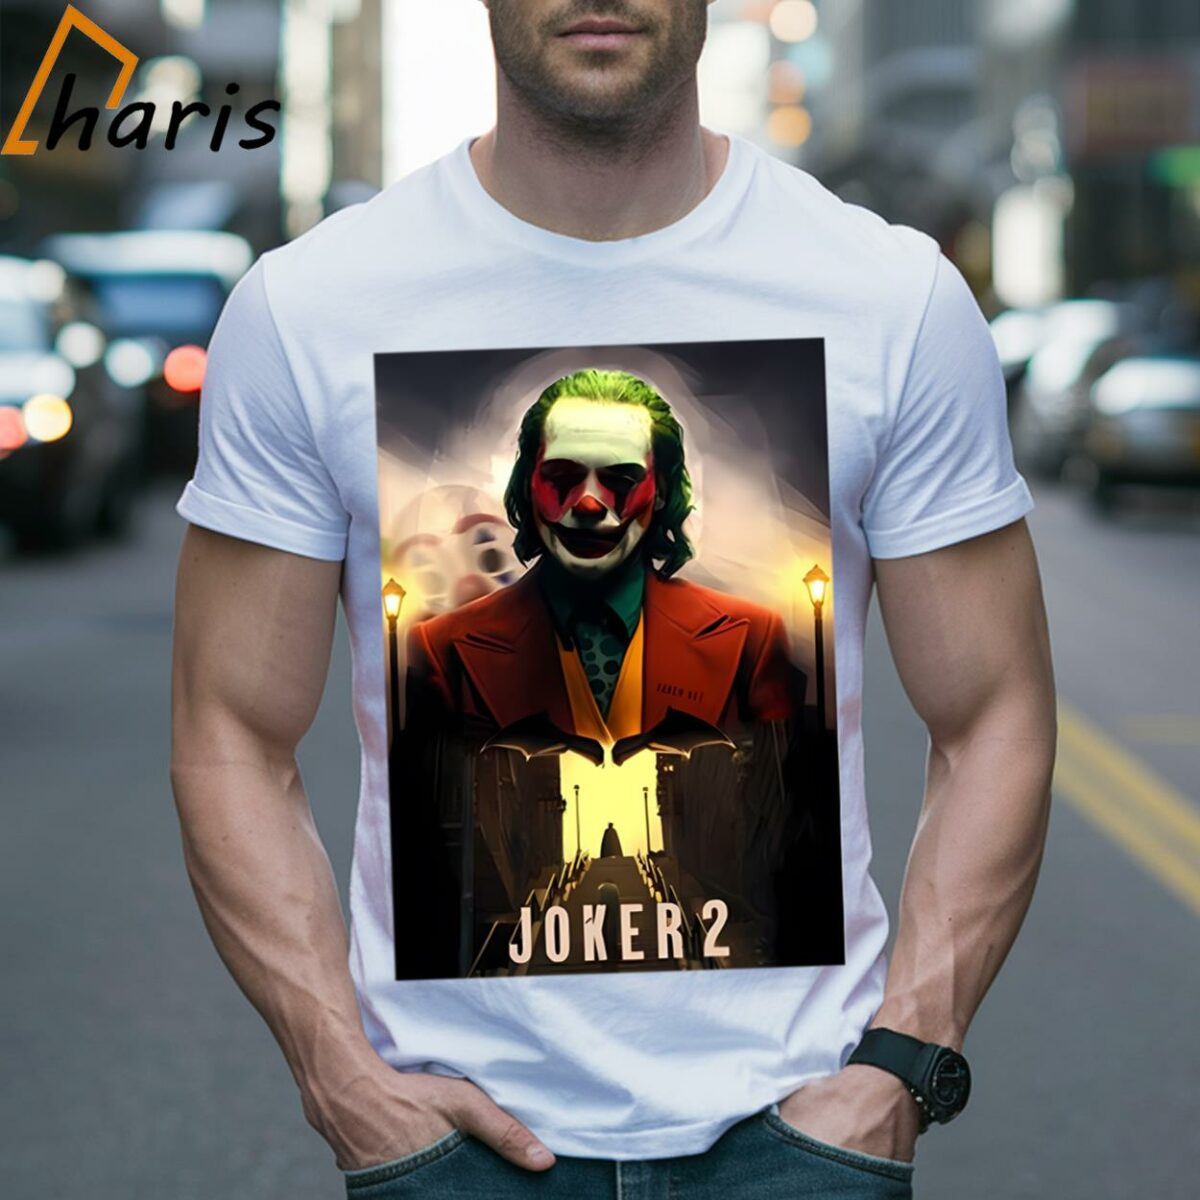 Joker 2 New Movie Poster T shirt 2 Shirt